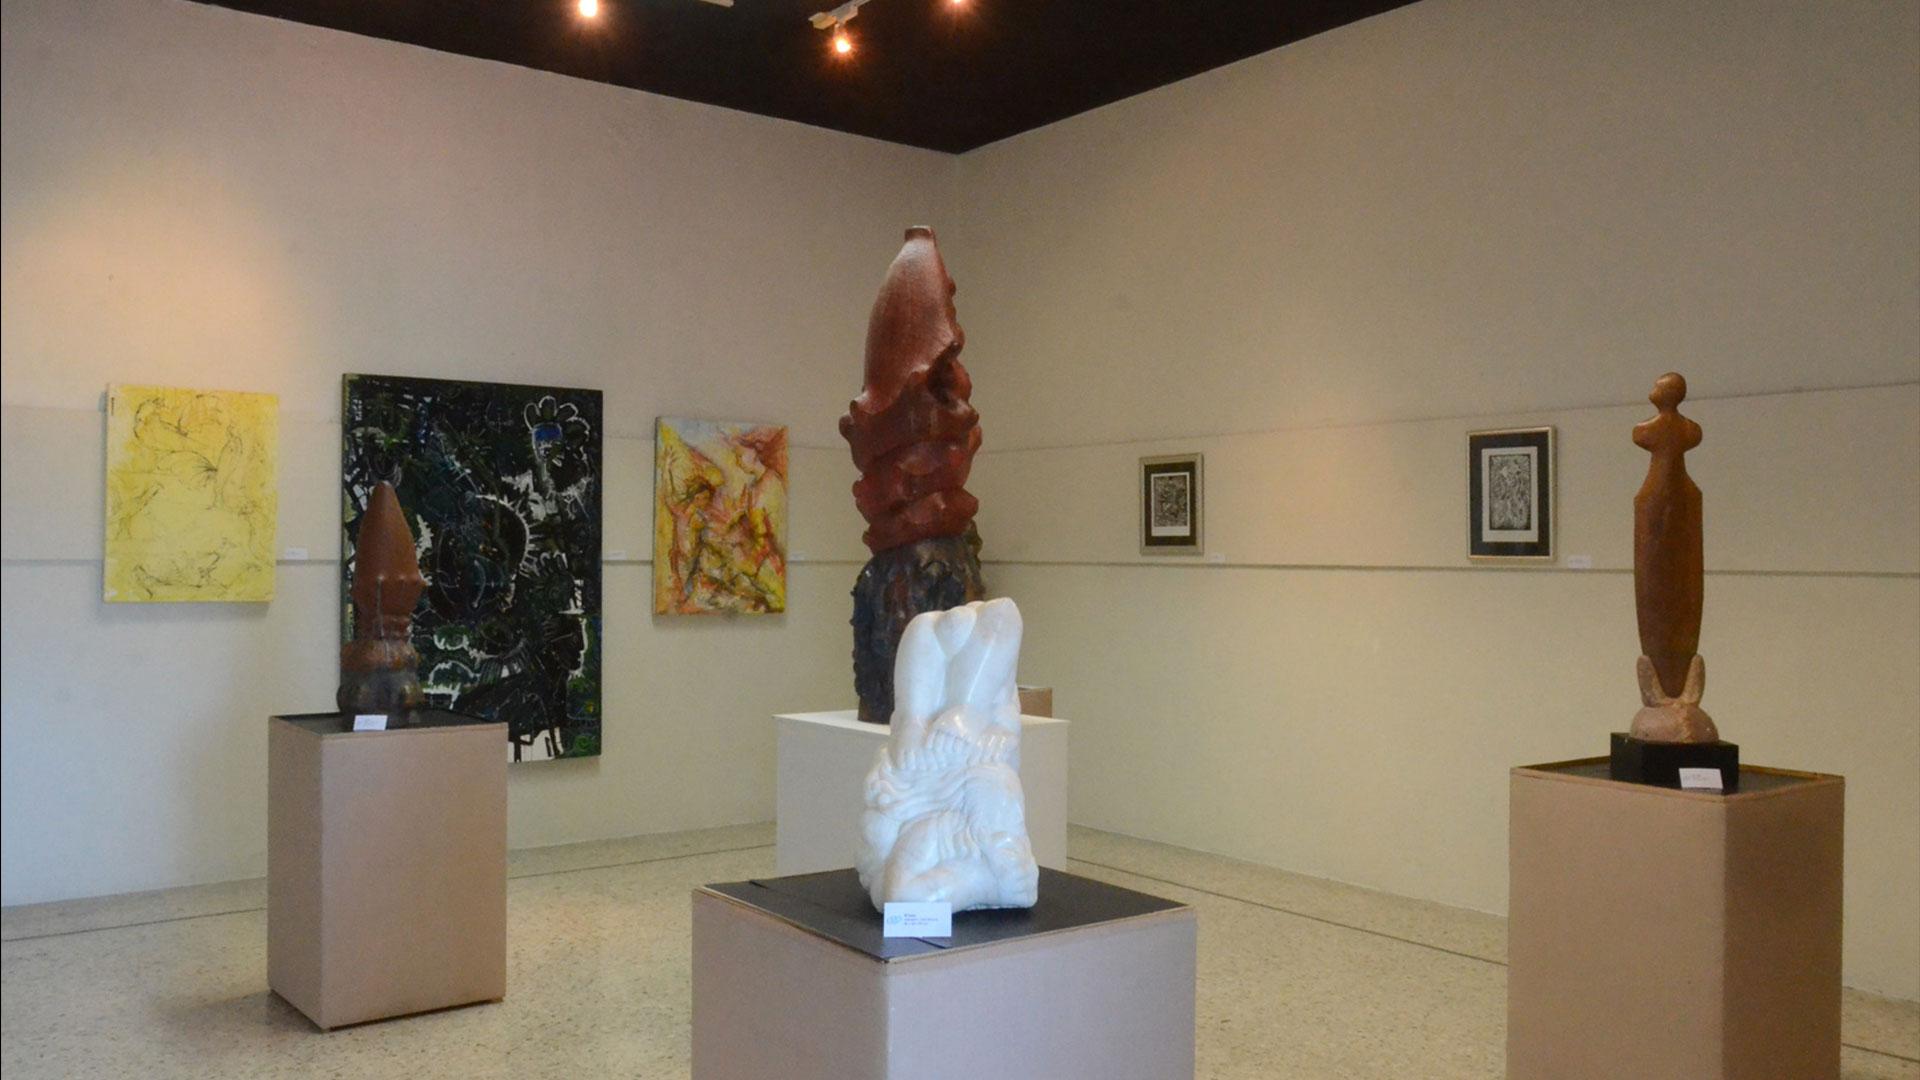 Exhiben esculturas, pinturas y grabados en galería de artes